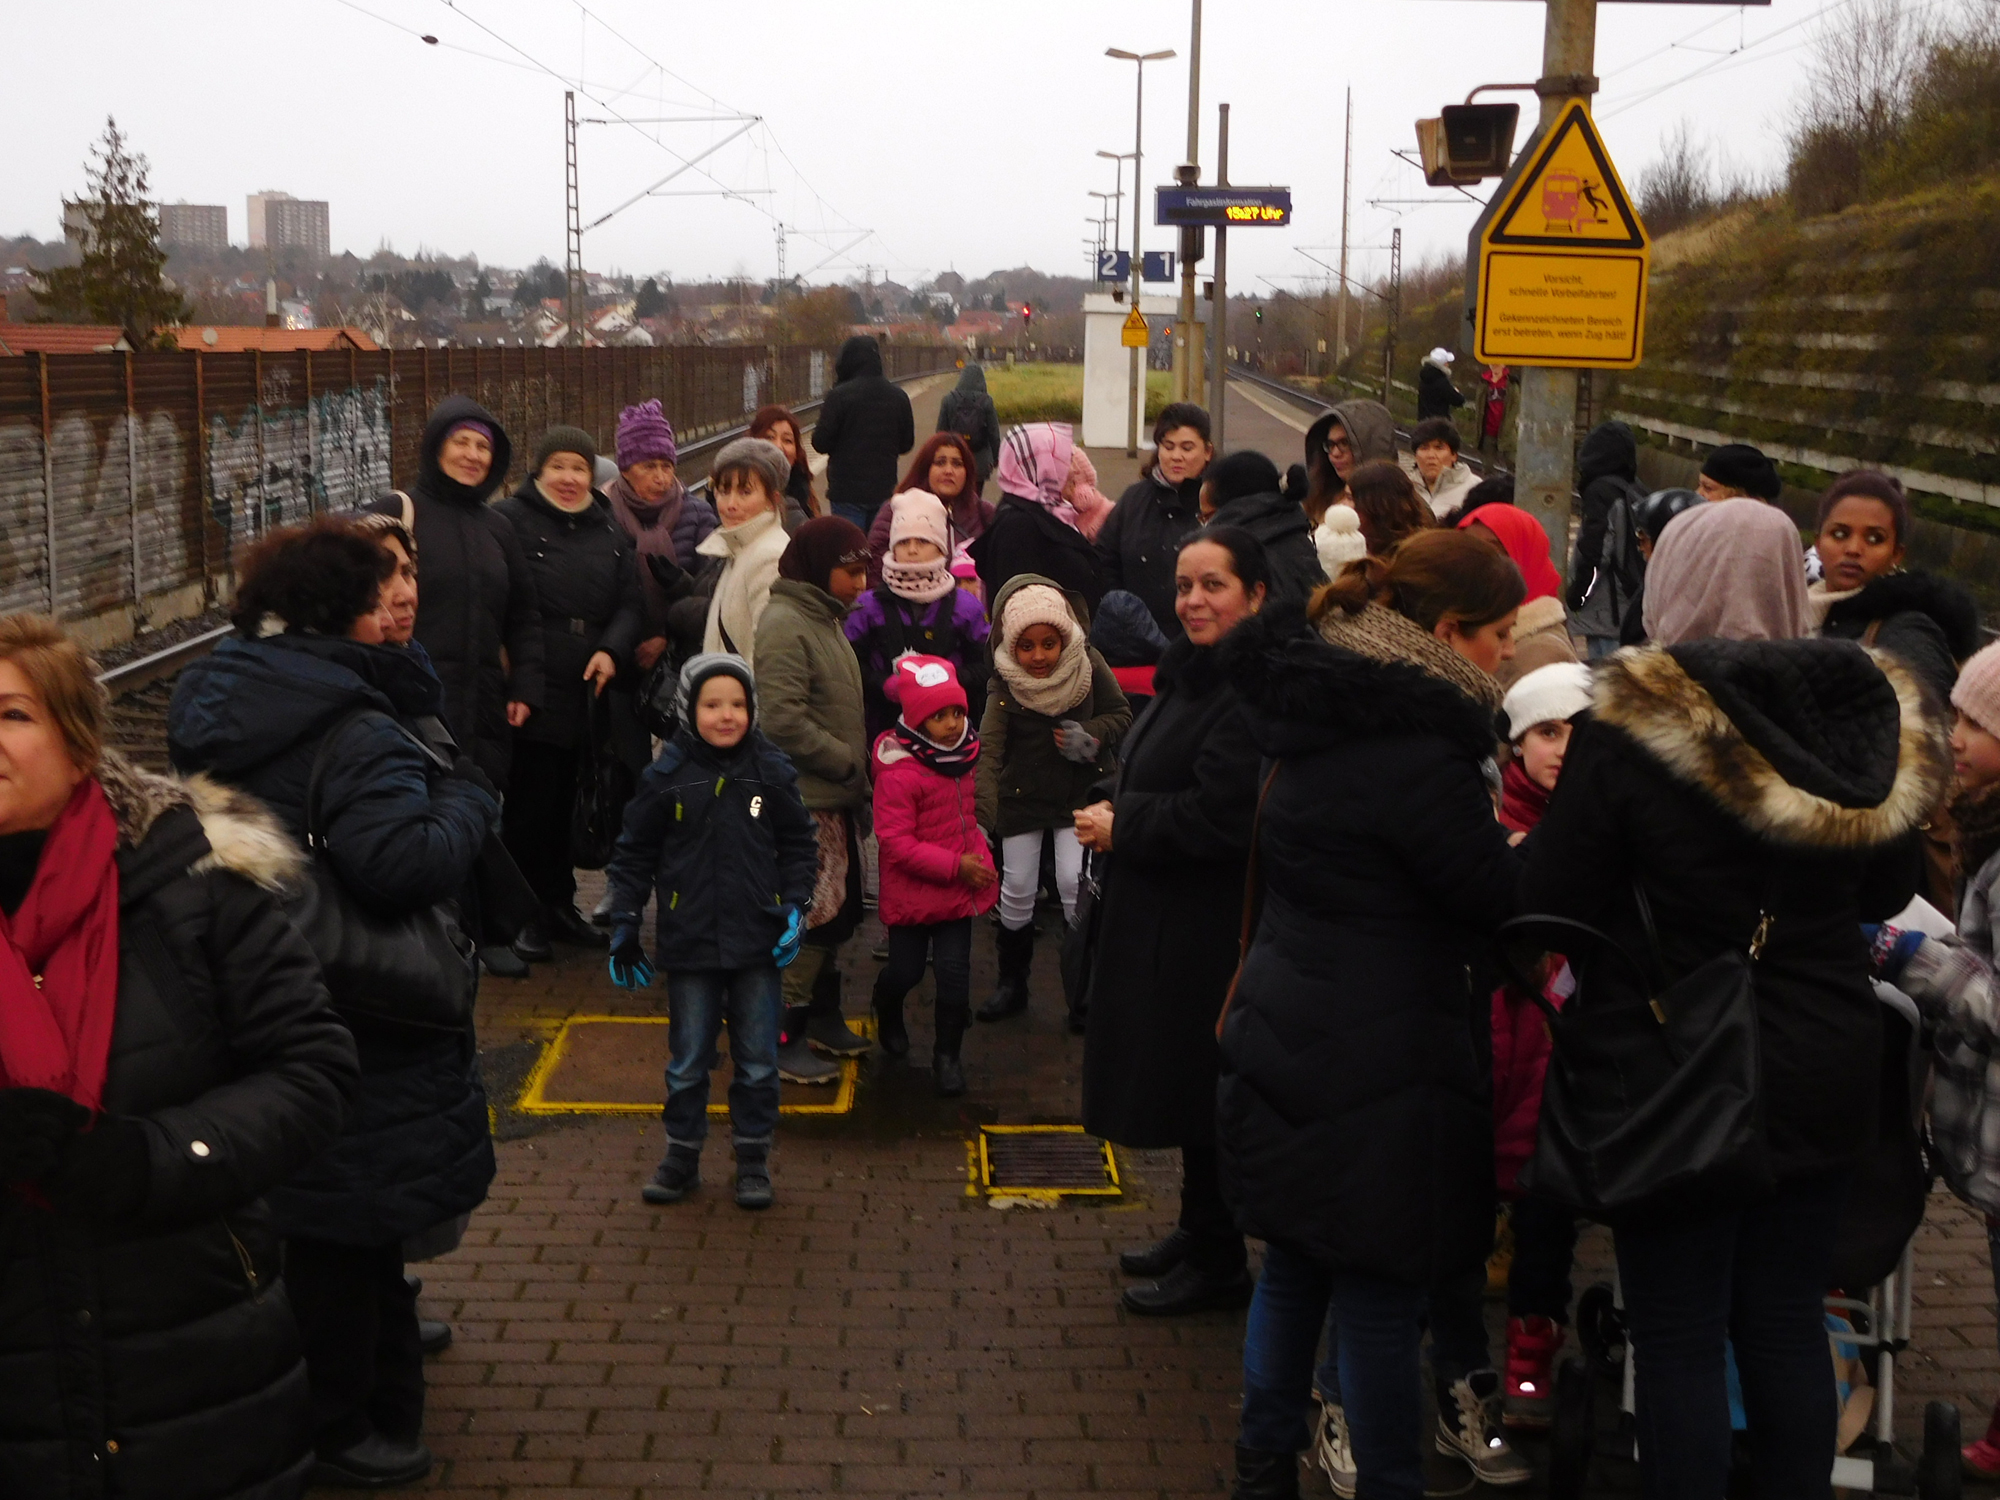 12.12.17, Besuch des Weihnachtsmarktes in Melsungen, Start am Bahnhof Oberzwehren